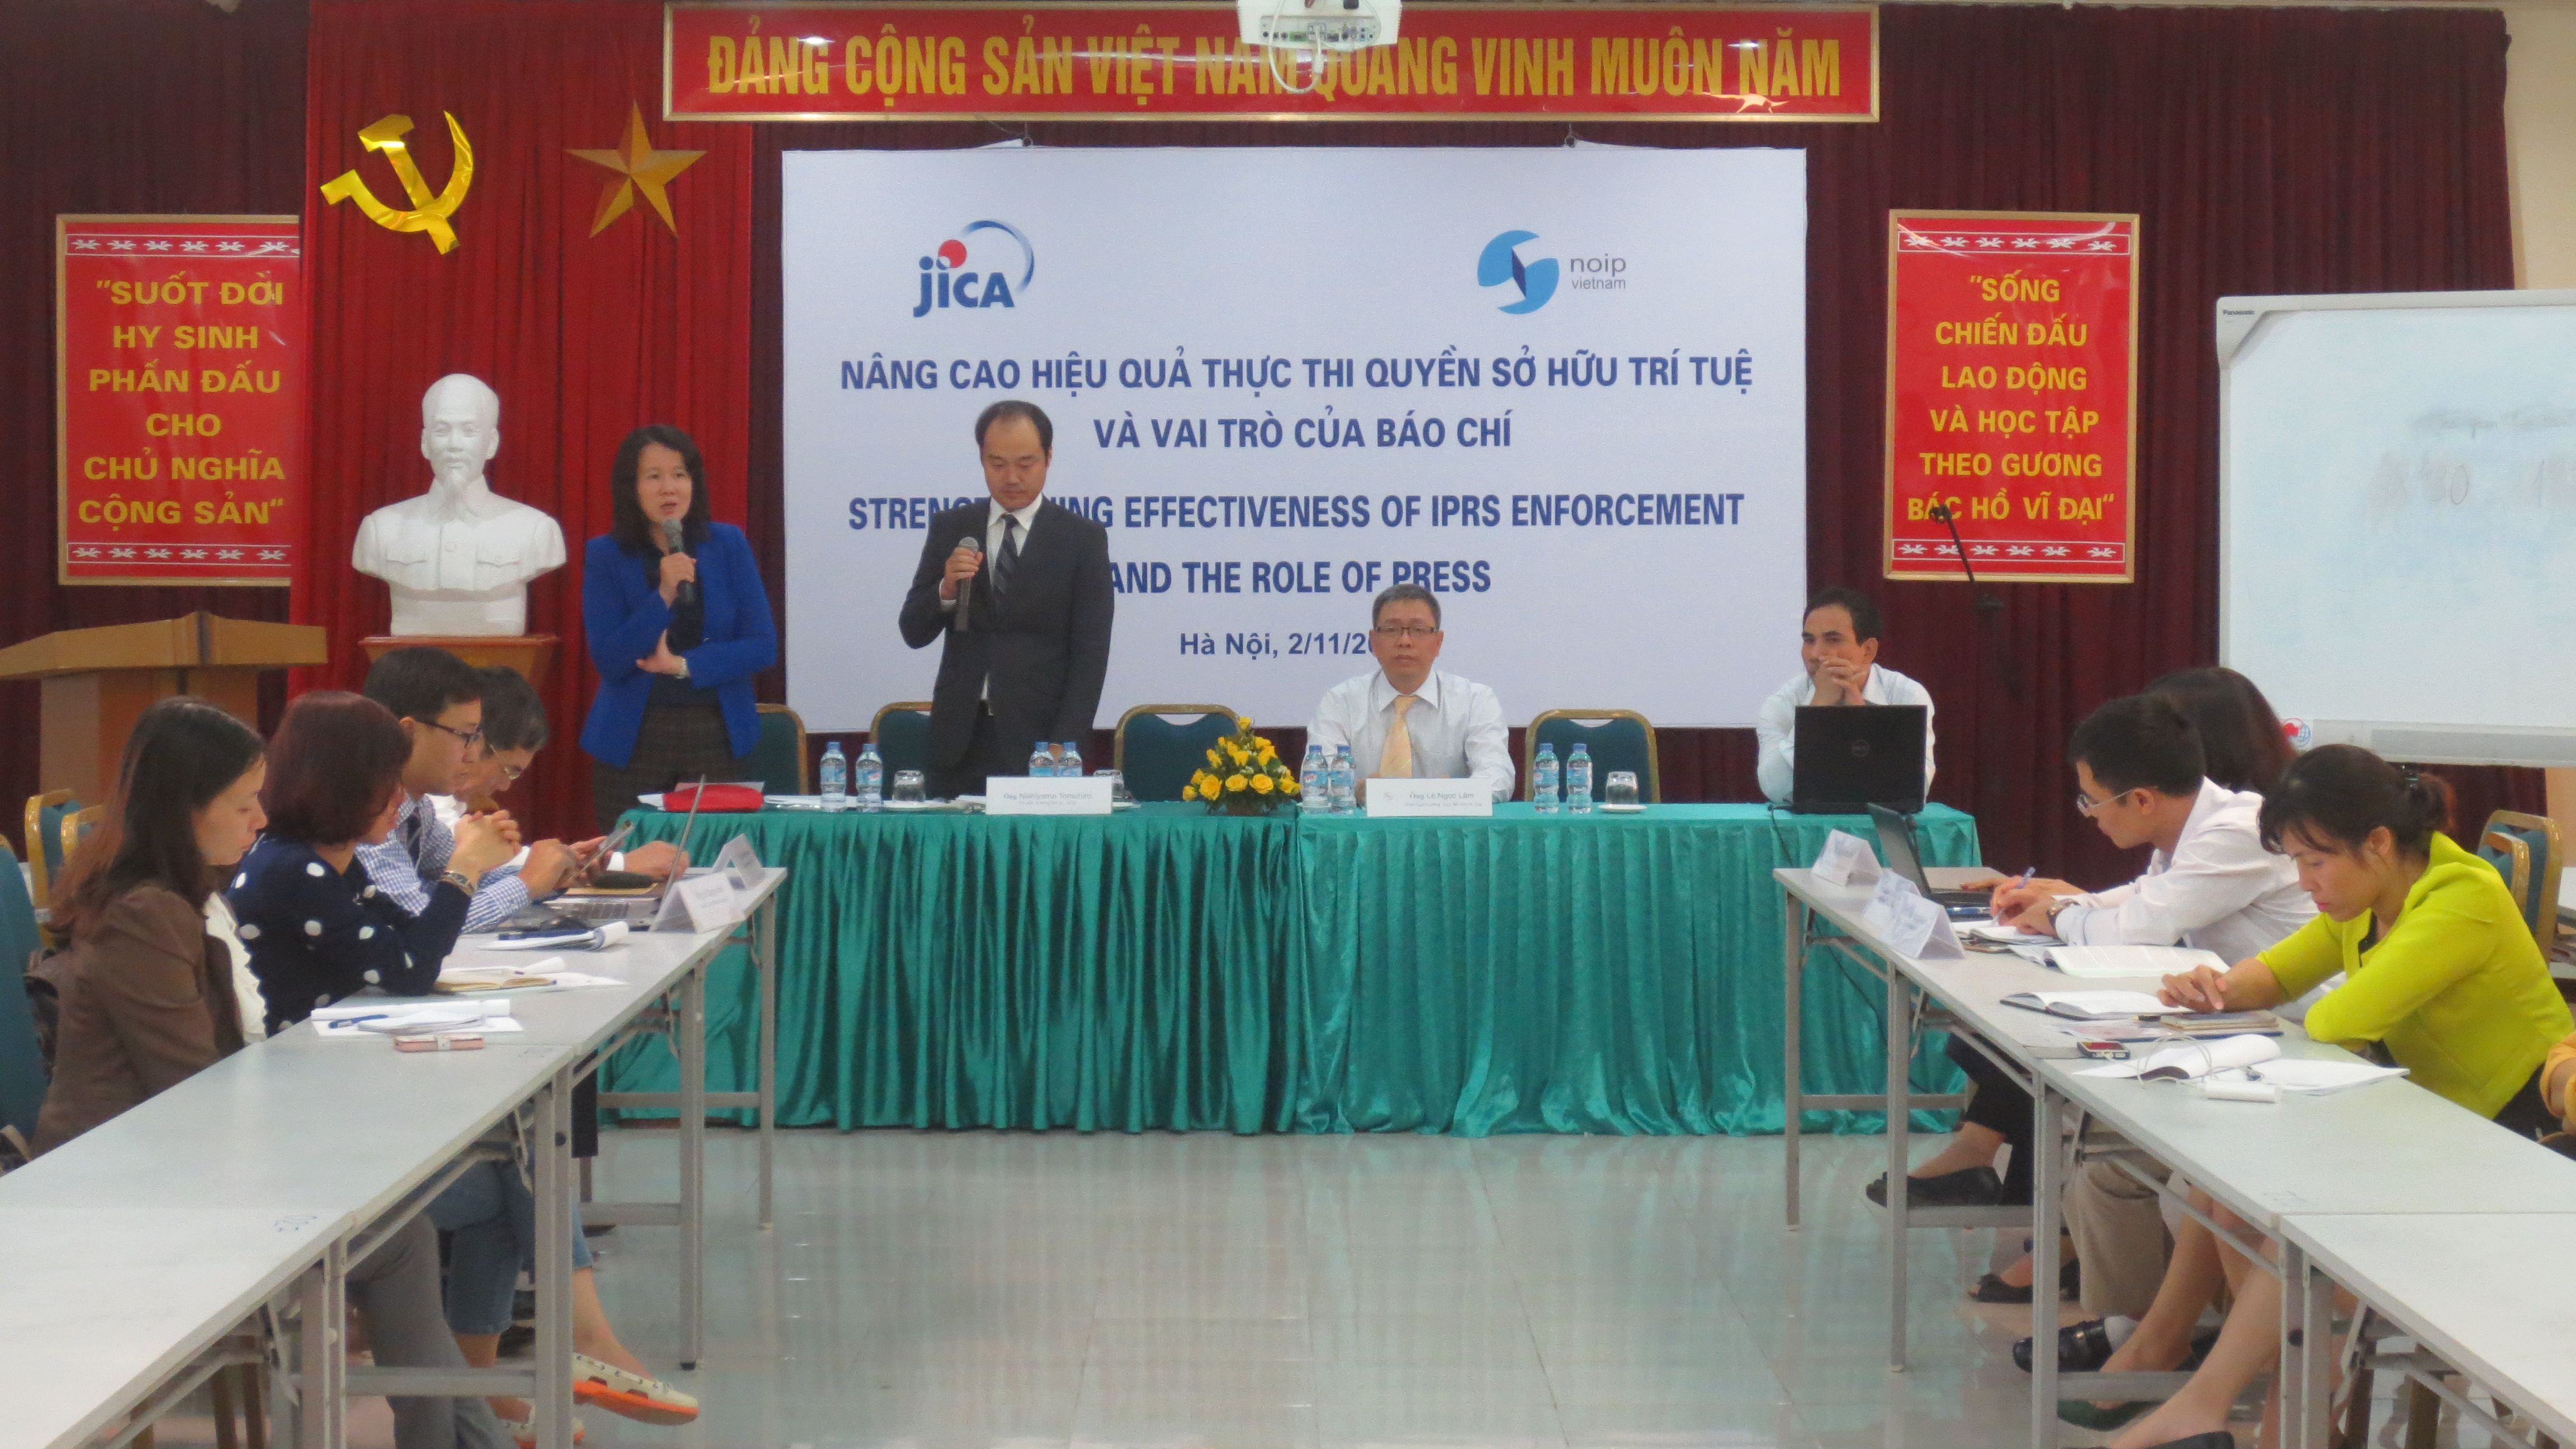 Việt Nam chủ trương tổ chức nhiều hội thảo, chương trình về quyền Sở hữu trí tuệ để nâng cao nhận thức cho người dân và doanh nghiệp